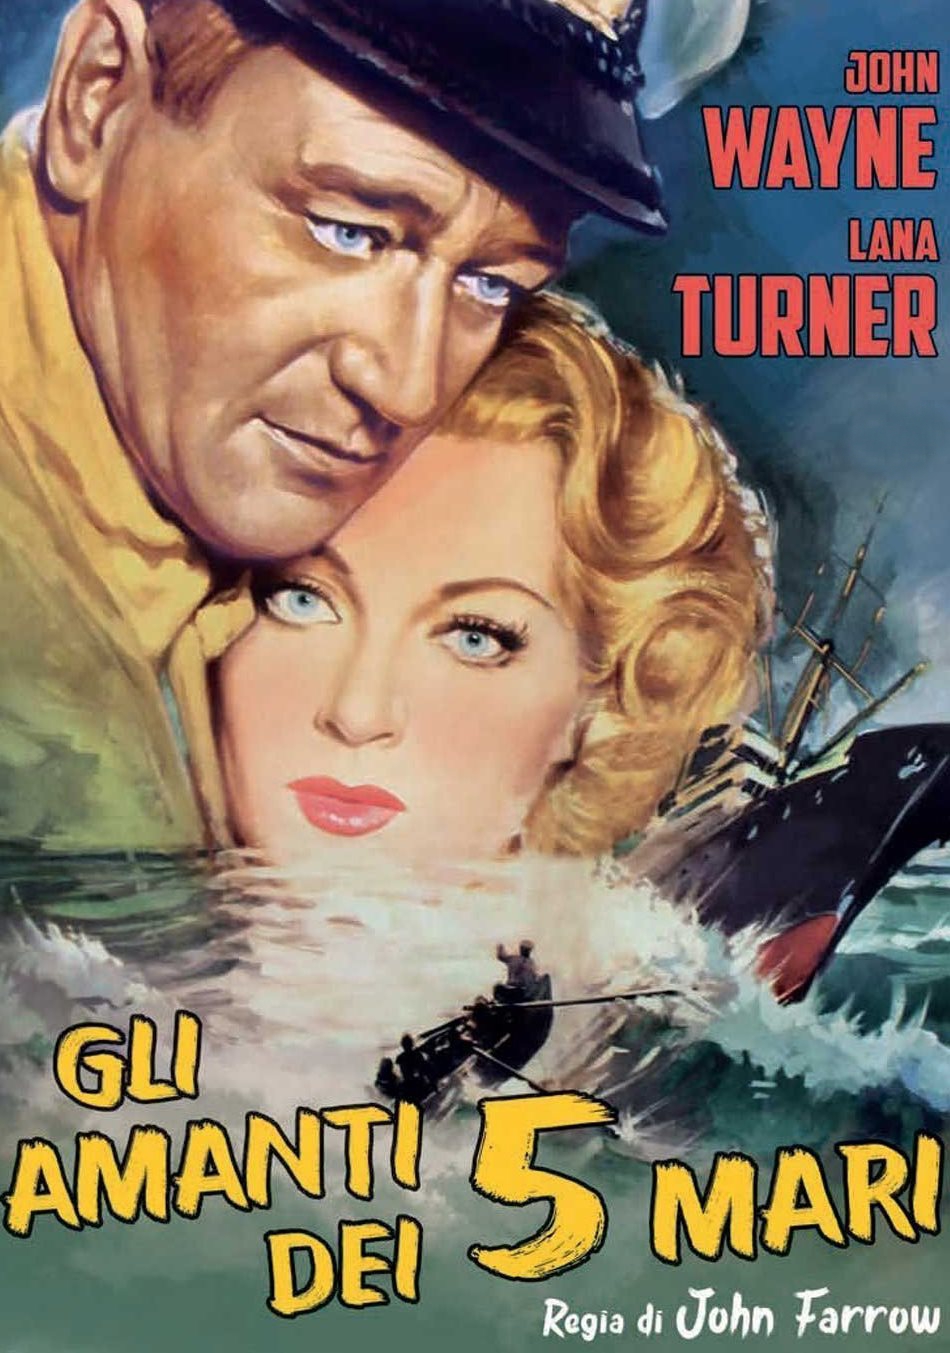 Gli amanti dei 5 mari [HD] (1955)